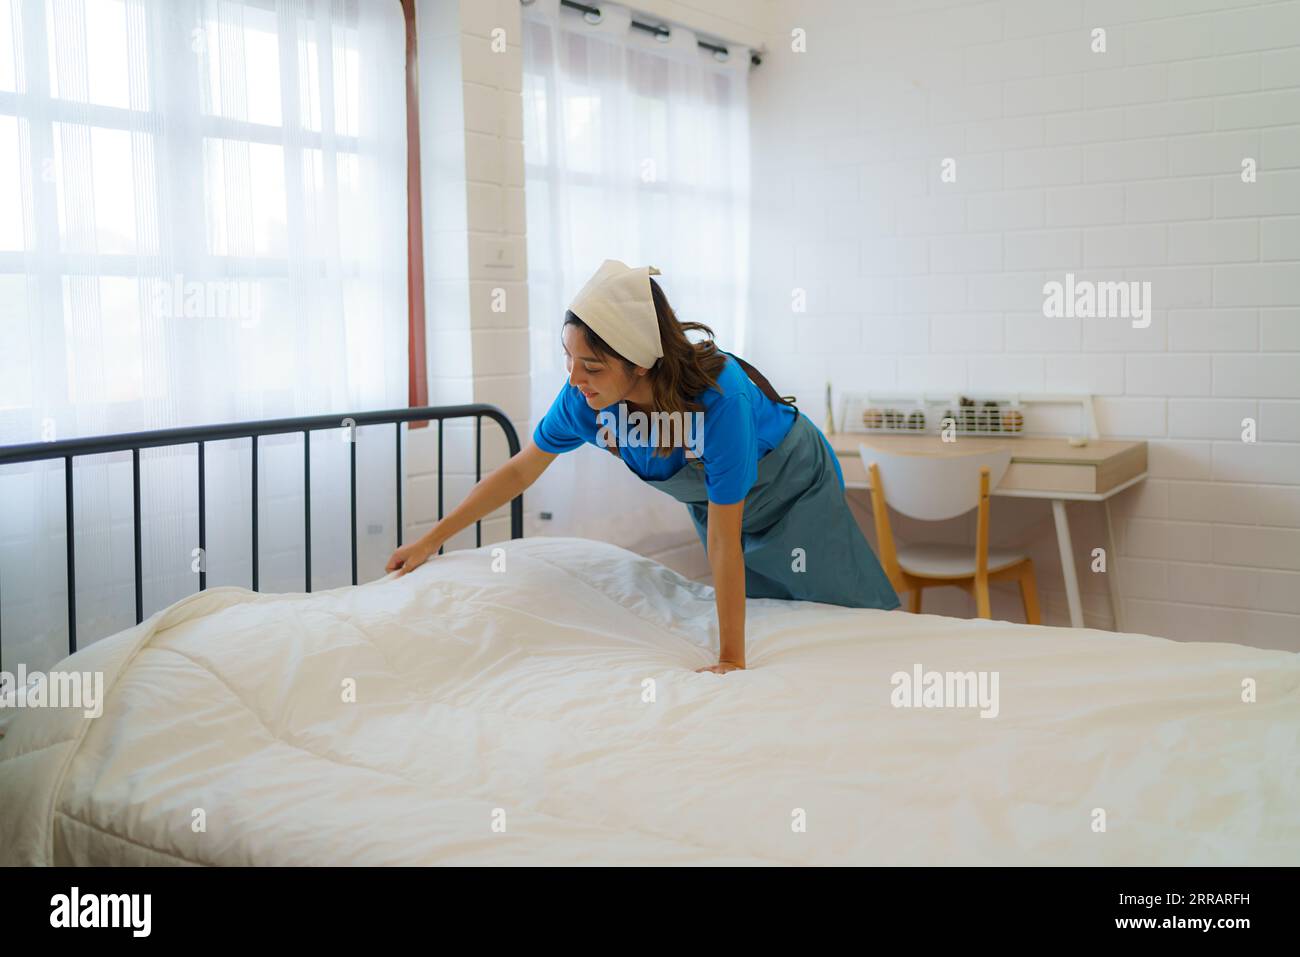 Nella tranquilla camera da letto, una casalinga asiatica organizza meticolosamente le coperte, infondendo calore e ordine, trasformando un letto in un'intima oasi di comfort. Foto Stock